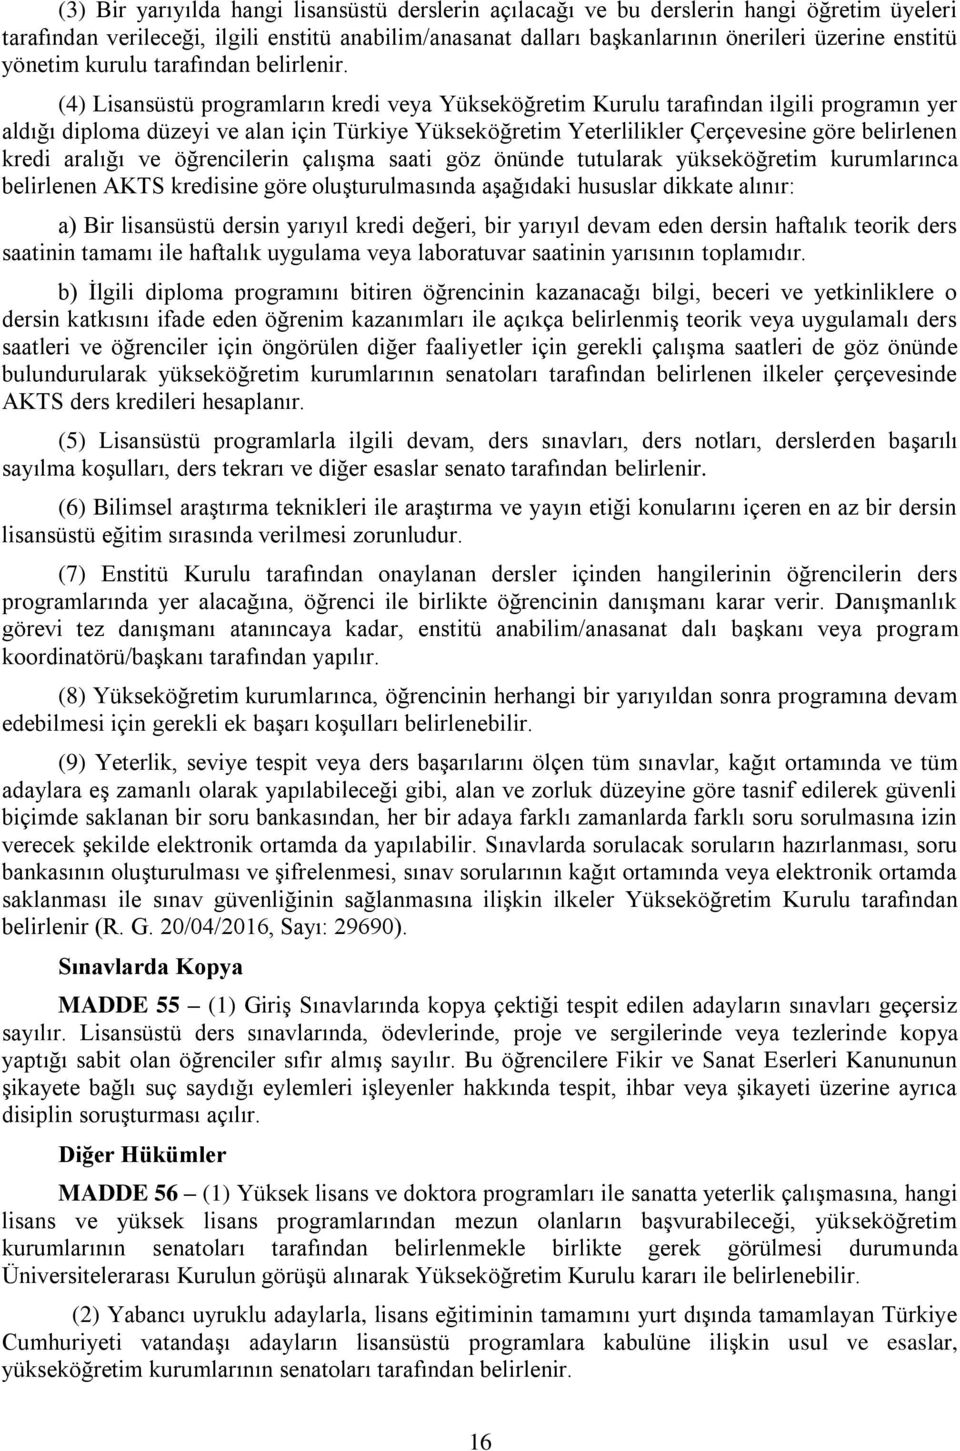 (4) Lisansüstü programların kredi veya Yükseköğretim Kurulu tarafından ilgili programın yer aldığı diploma düzeyi ve alan için Türkiye Yükseköğretim Yeterlilikler Çerçevesine göre belirlenen kredi